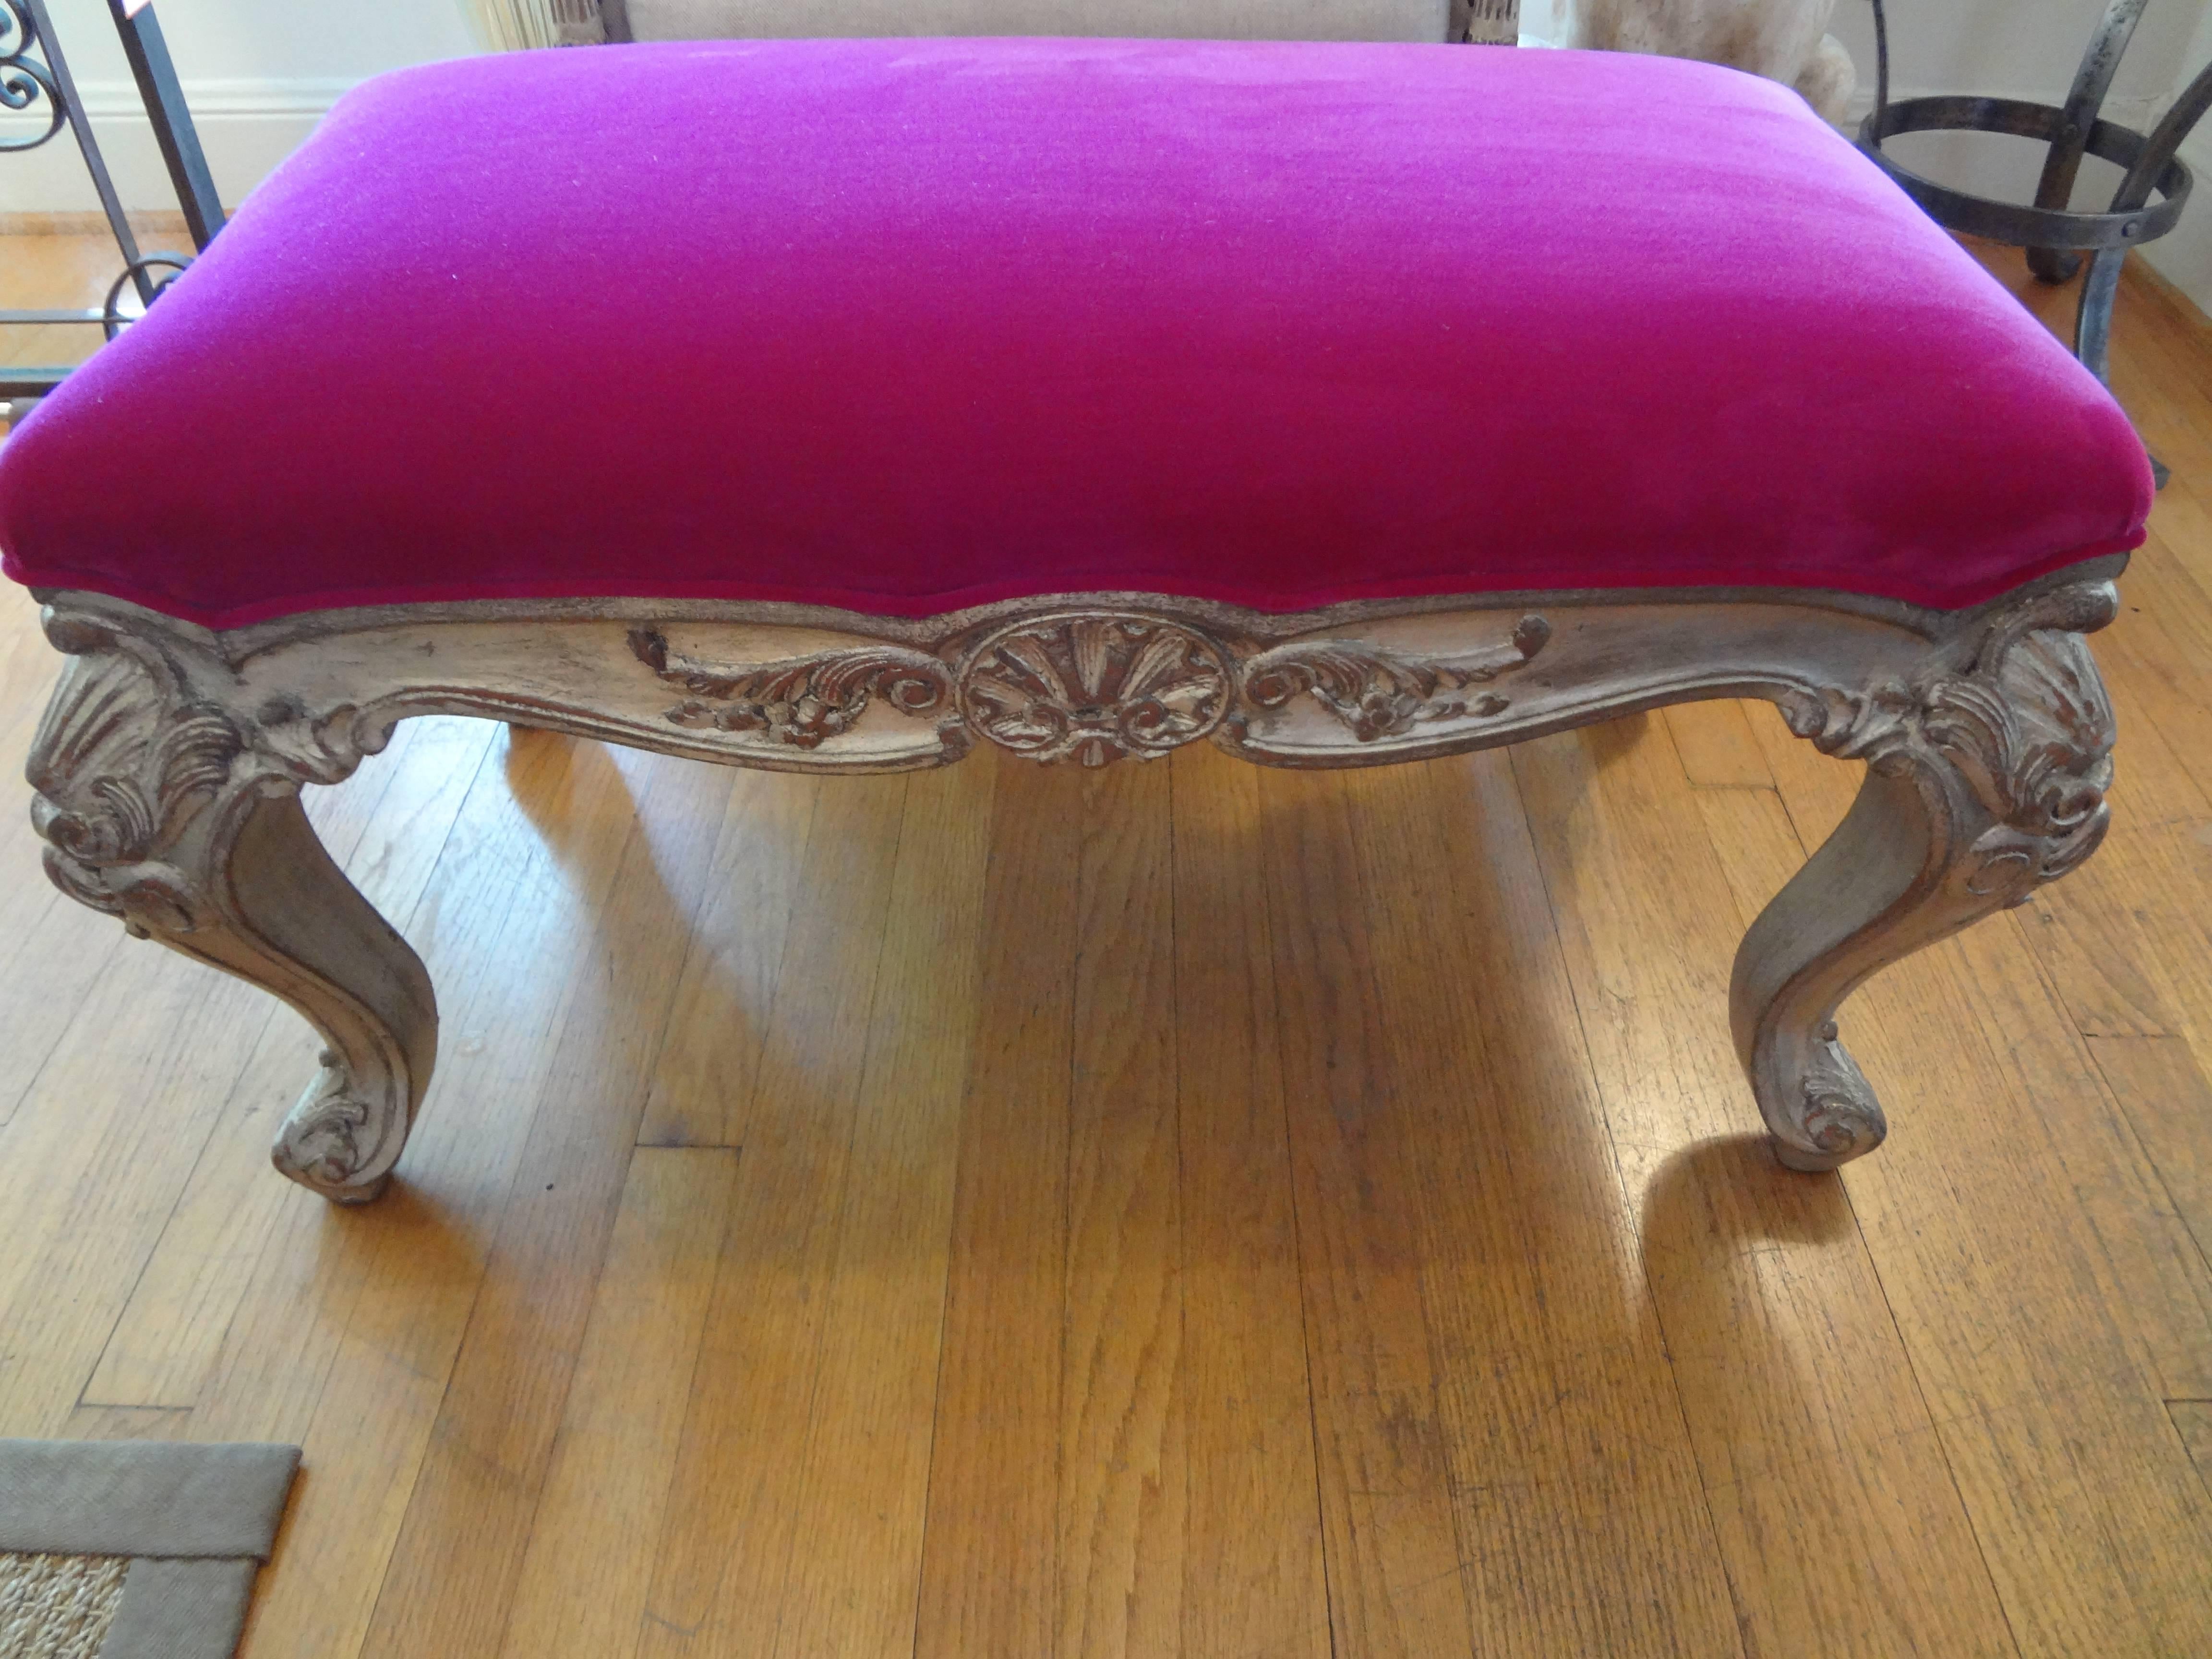 Early 20th Century Antique Italian Silver Gilt Wood Bench Upholstered in Fuchsia Velvet